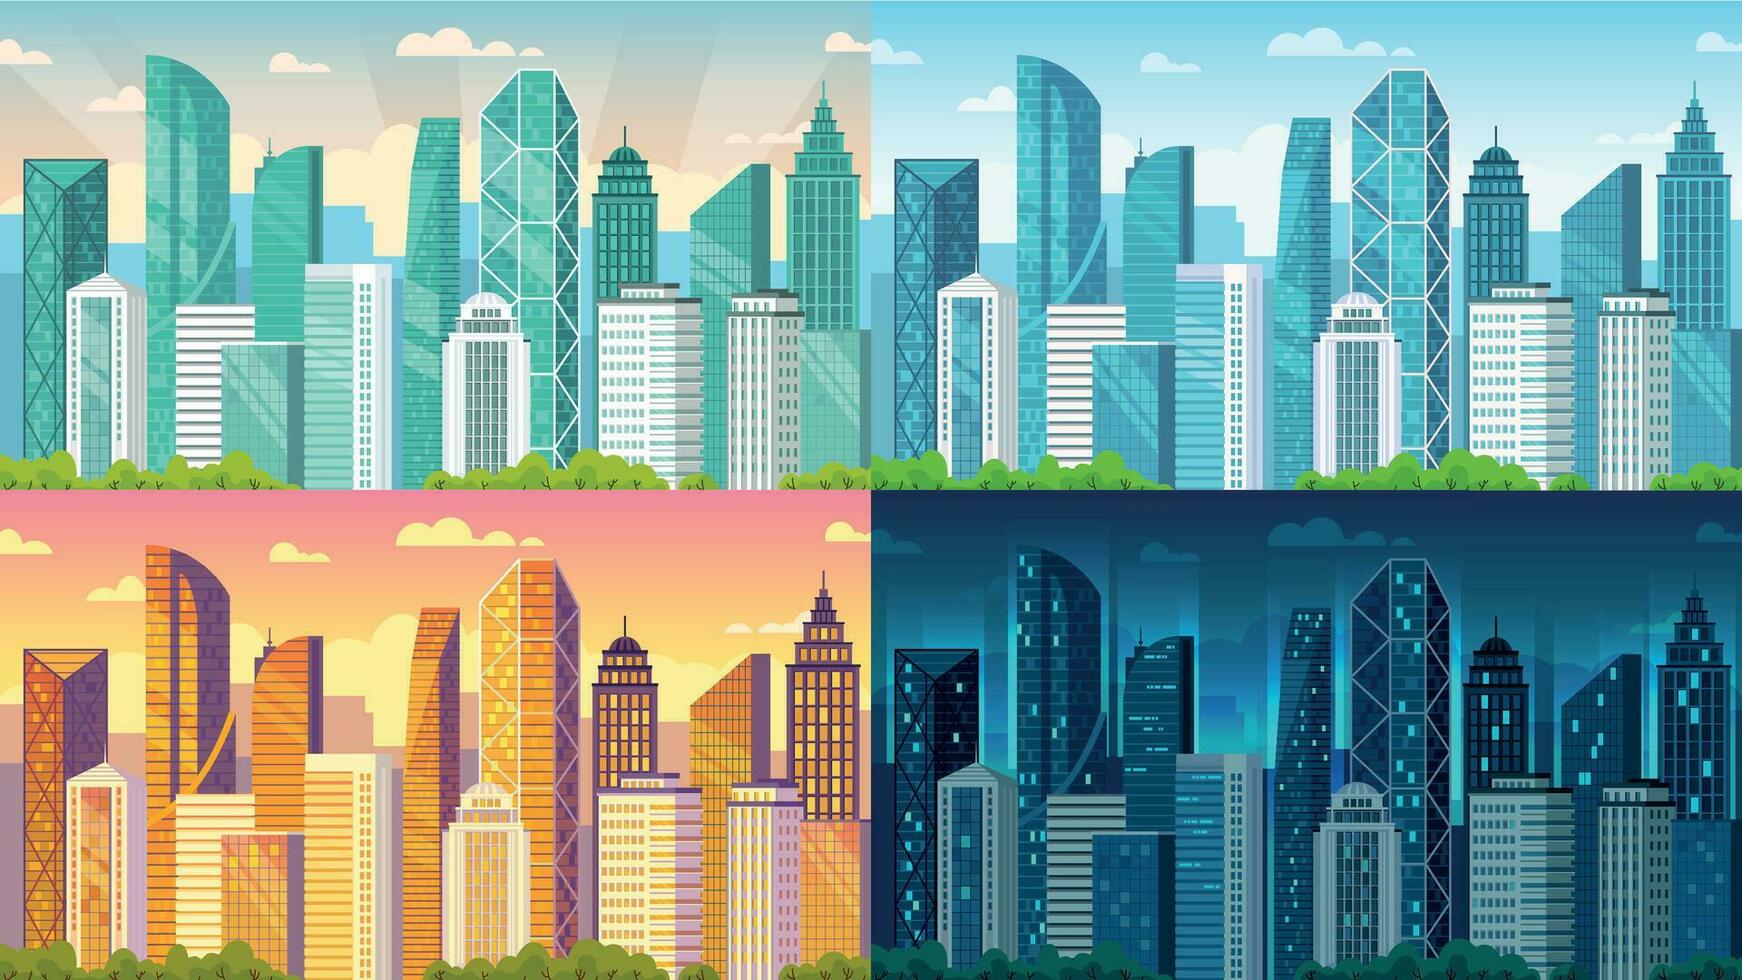 dag tid stadsbild. stad byggnader på morgon, dag, solnedgång och natt stad se tecknad serie vektor bakgrund illustration uppsättning